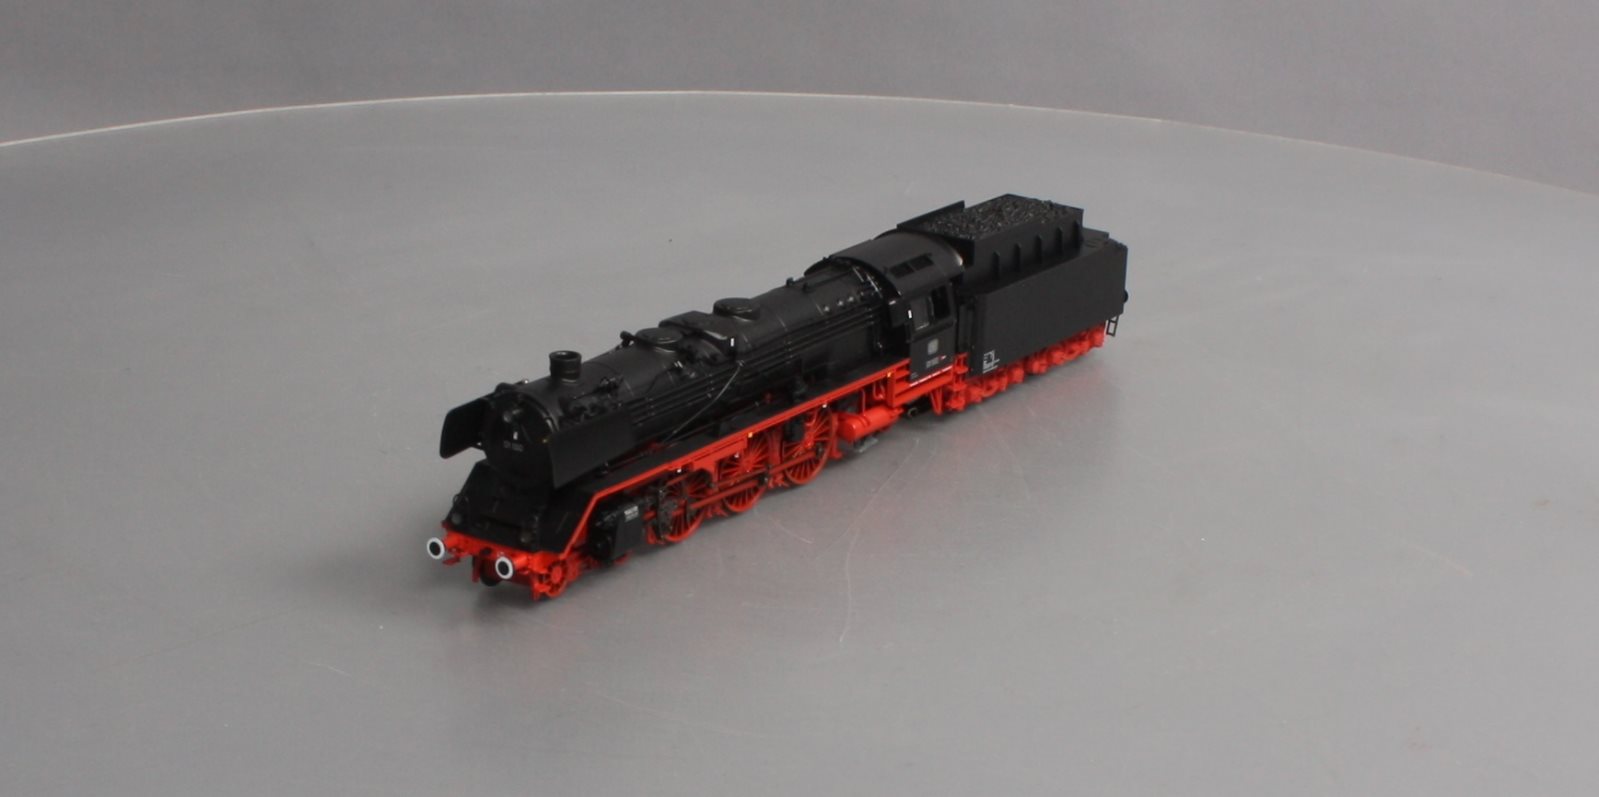 正規版marklin メルクリン 39013 DB Steam Locomotive BR 01 150 鉄道模型 HOゲージ 中古 美品 K6400841 外国車輌